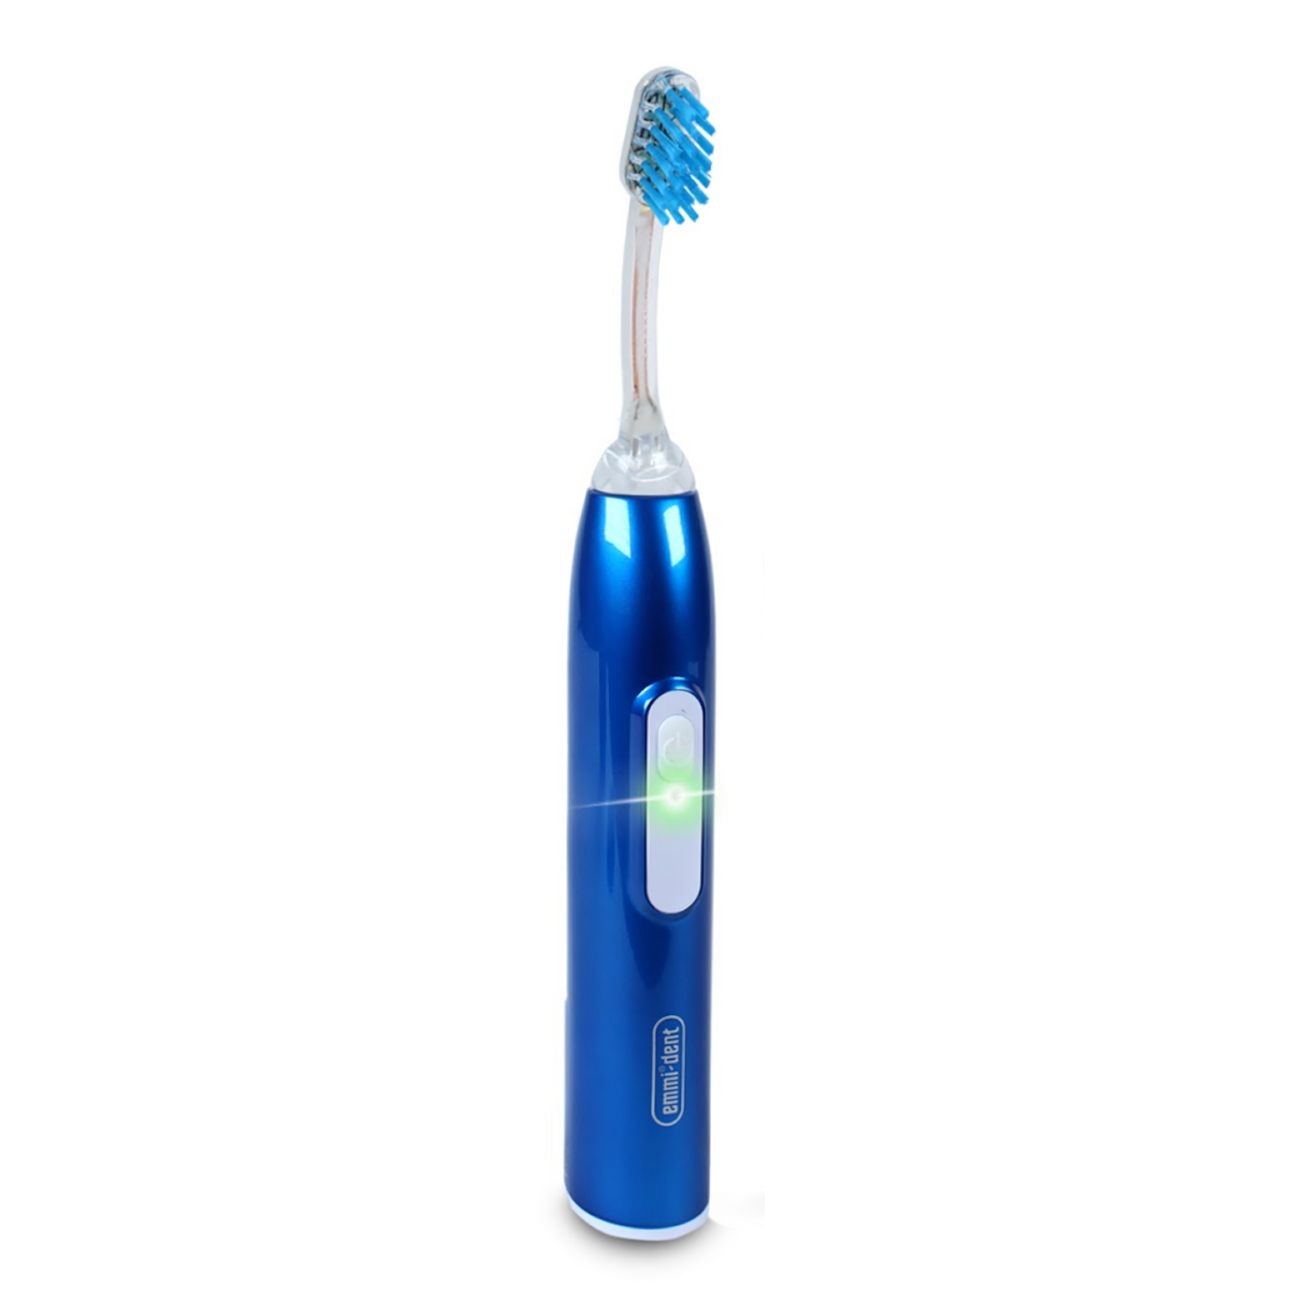 Ультразвуковая зубная щетка Emmi-Dent 6 Professional Metallic Blue